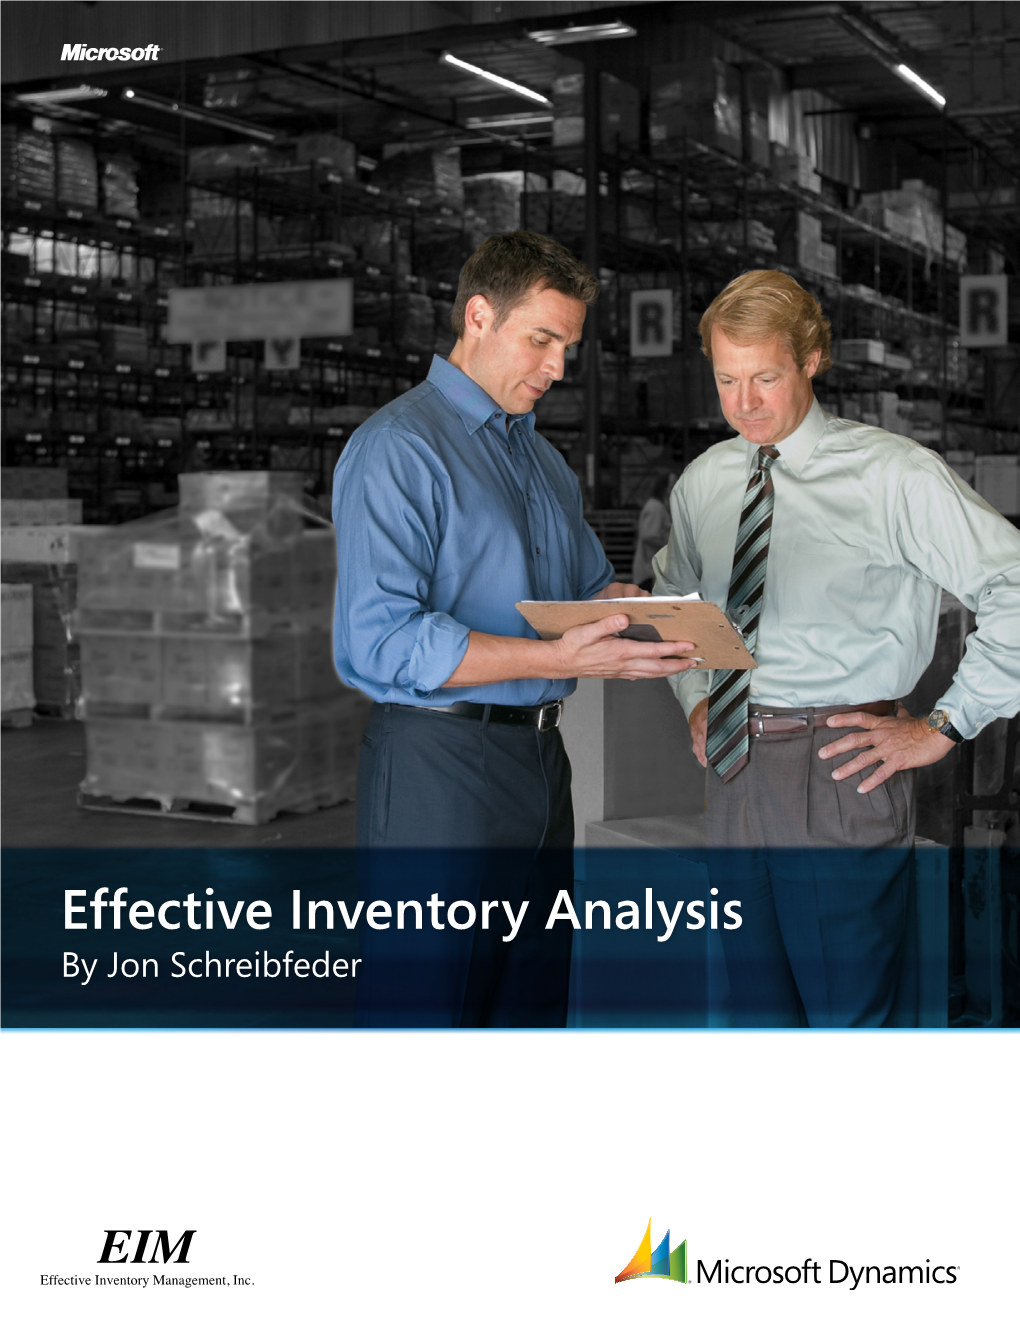 Effective Inventory Analysis by Jon Schreibfeder